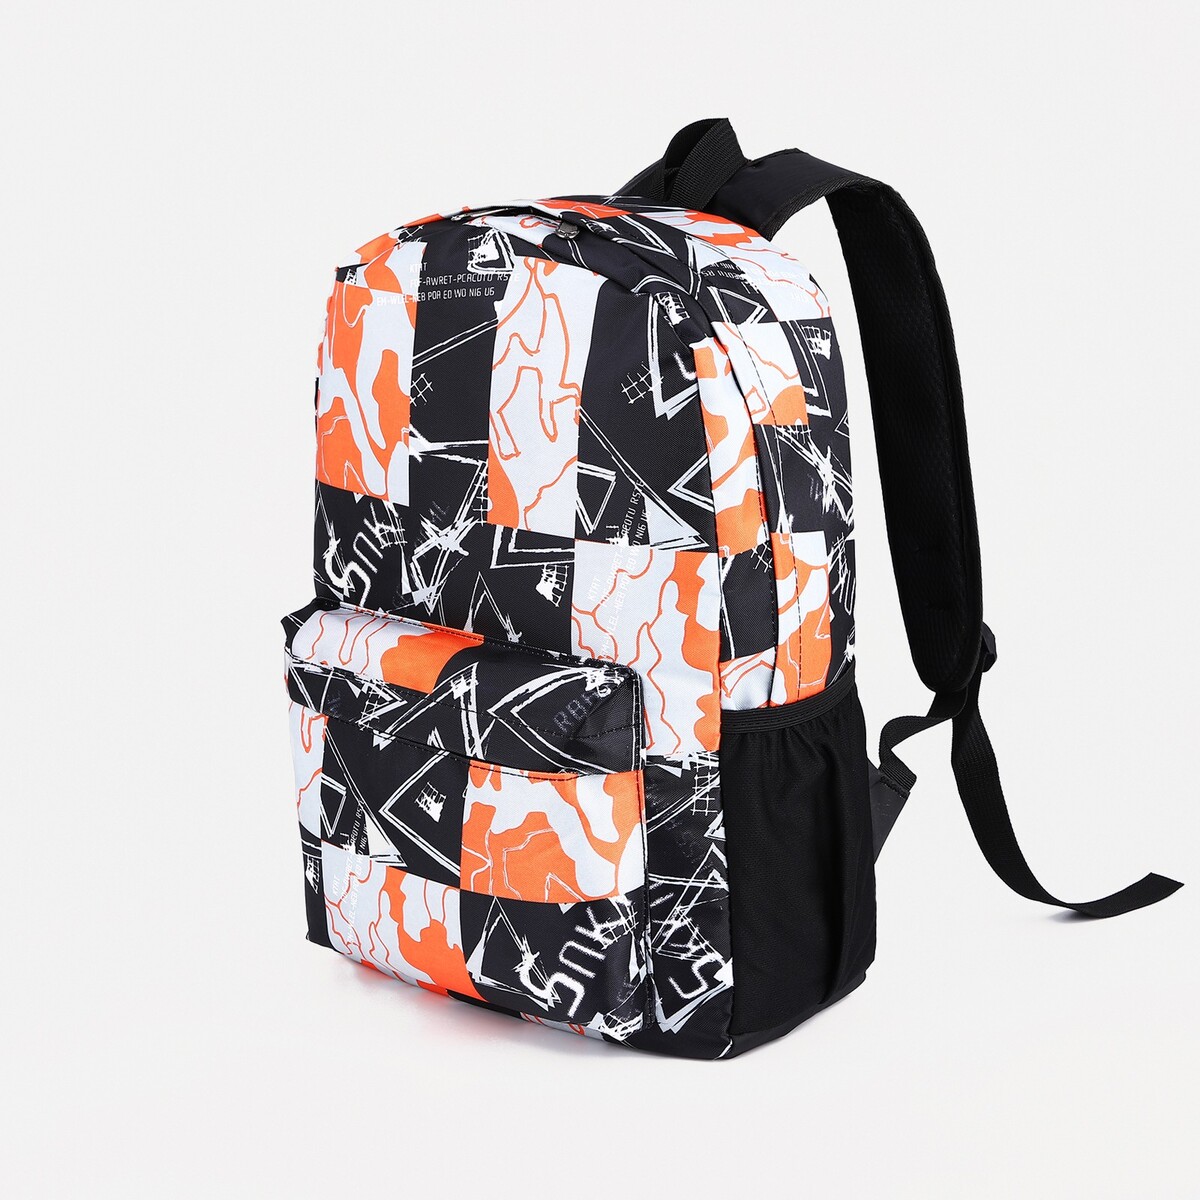 Рюкзак школьный из текстиля на молнии, 3 кармана, цвет оранжевый/черный школьный анатомический рюкзак grizzly ru 437 4 4 оранжевый